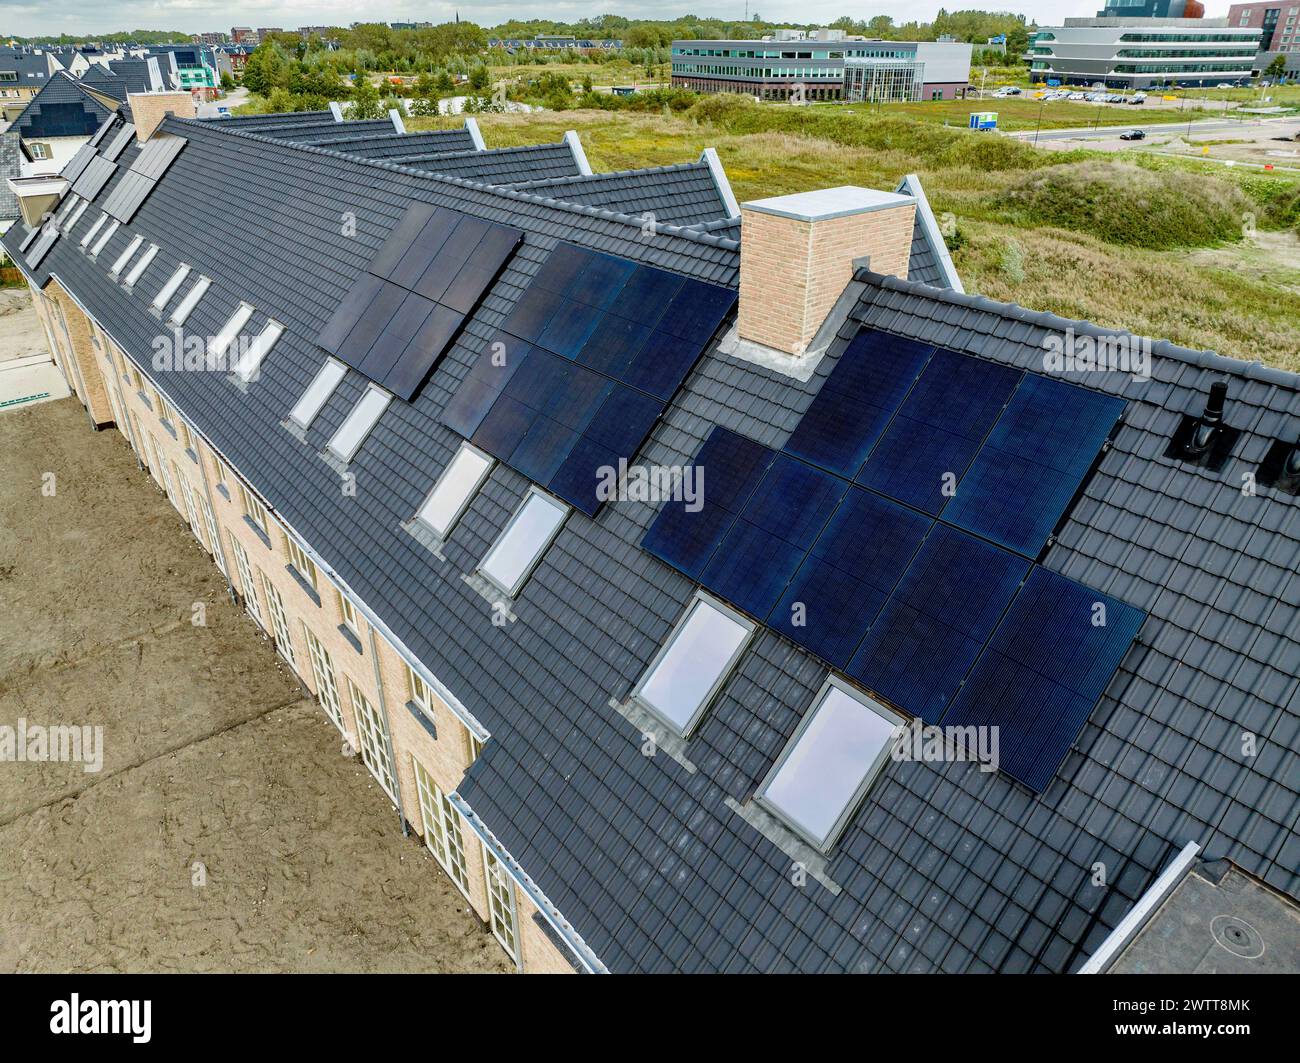 Une vue Bird'seye de panneaux solaires sur un toit résidentiel Banque D'Images